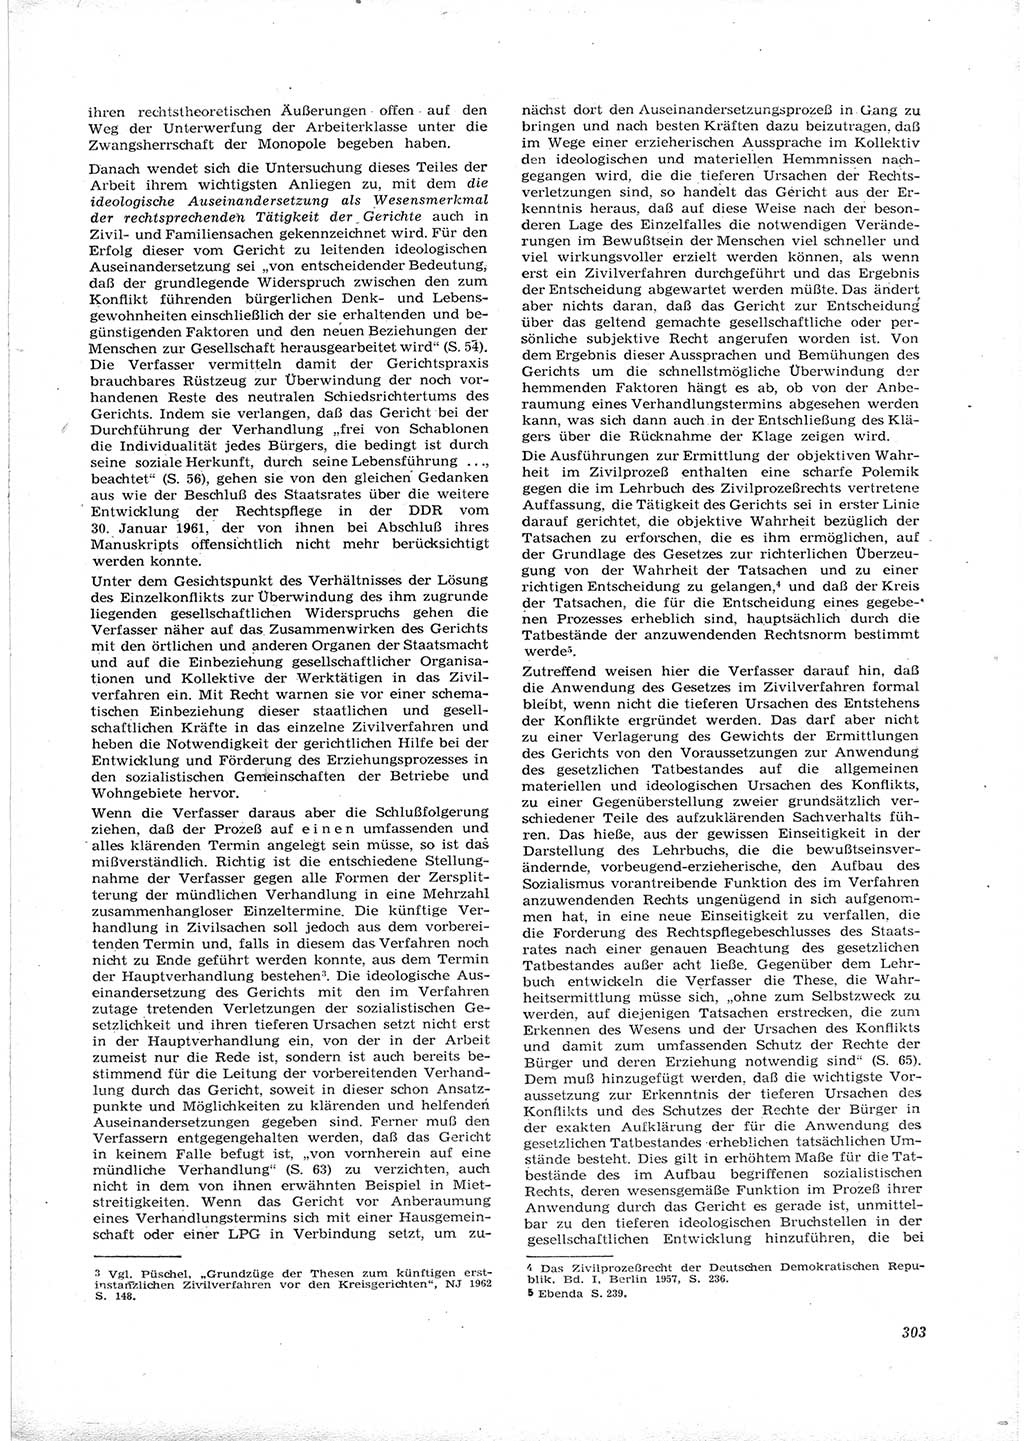 Neue Justiz (NJ), Zeitschrift für Recht und Rechtswissenschaft [Deutsche Demokratische Republik (DDR)], 16. Jahrgang 1962, Seite 303 (NJ DDR 1962, S. 303)